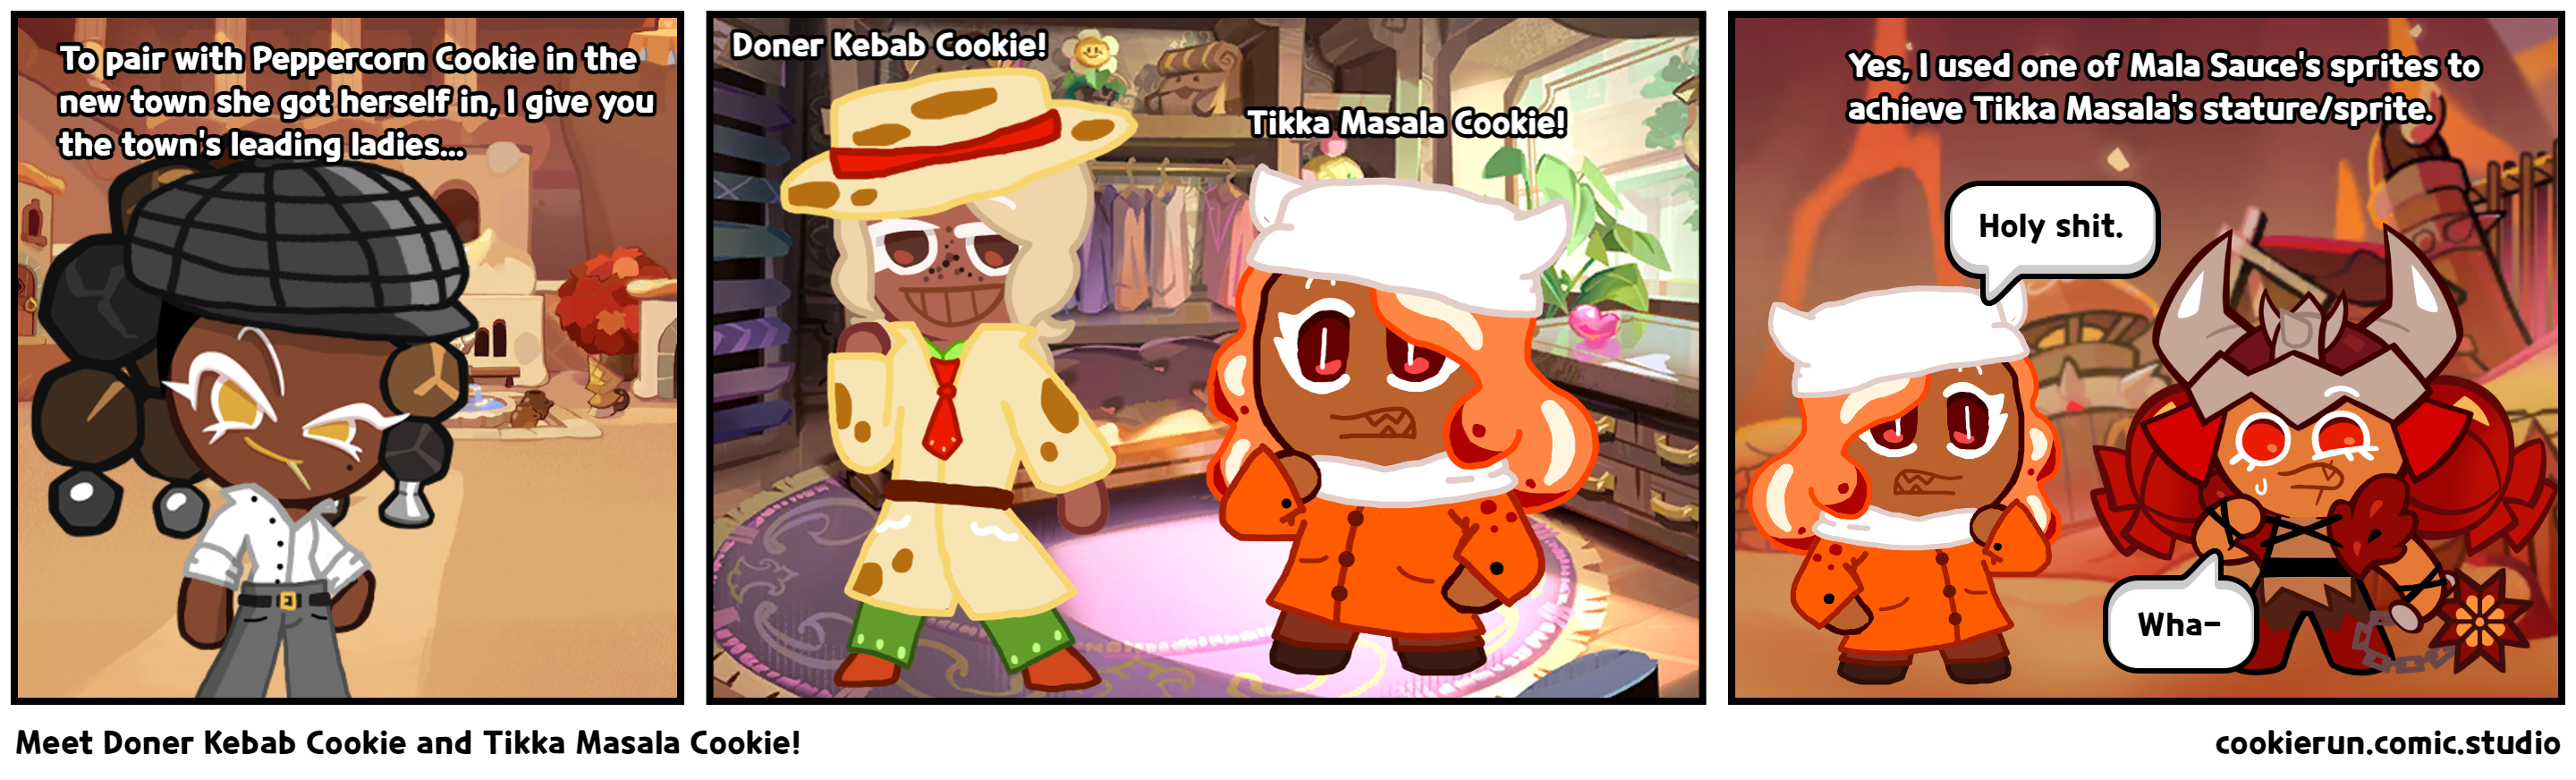 Meet Doner Kebab Cookie and Tikka Masala Cookie!